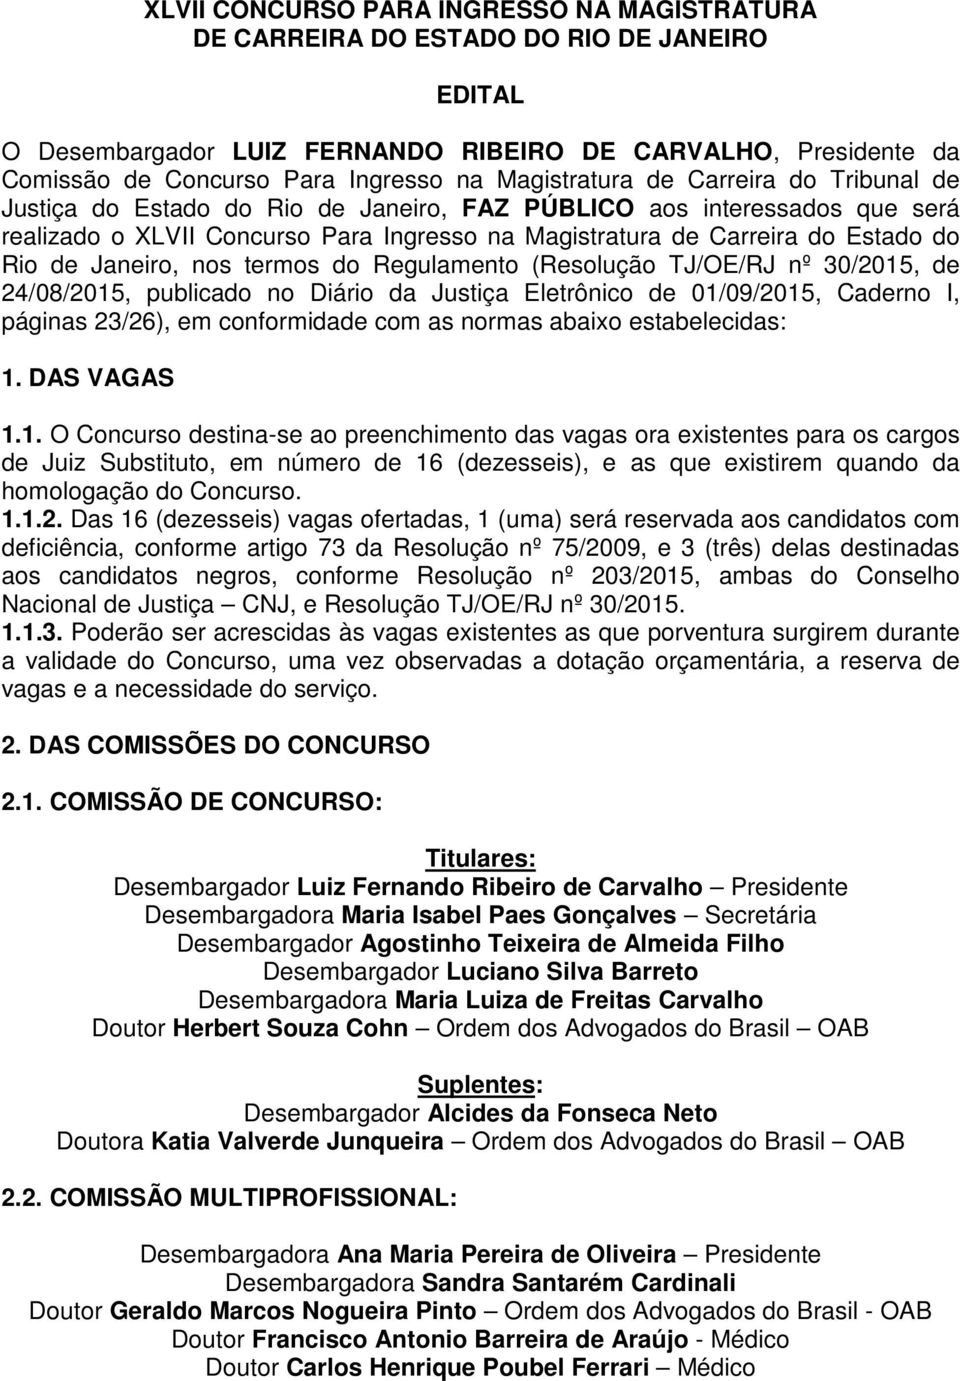 Rio de Janeiro, nos termos do Regulamento (Resolução TJ/OE/RJ nº 30/2015, de 24/08/2015, publicado no Diário da Justiça Eletrônico de 01/09/2015, Caderno I, páginas 23/26), em conformidade com as